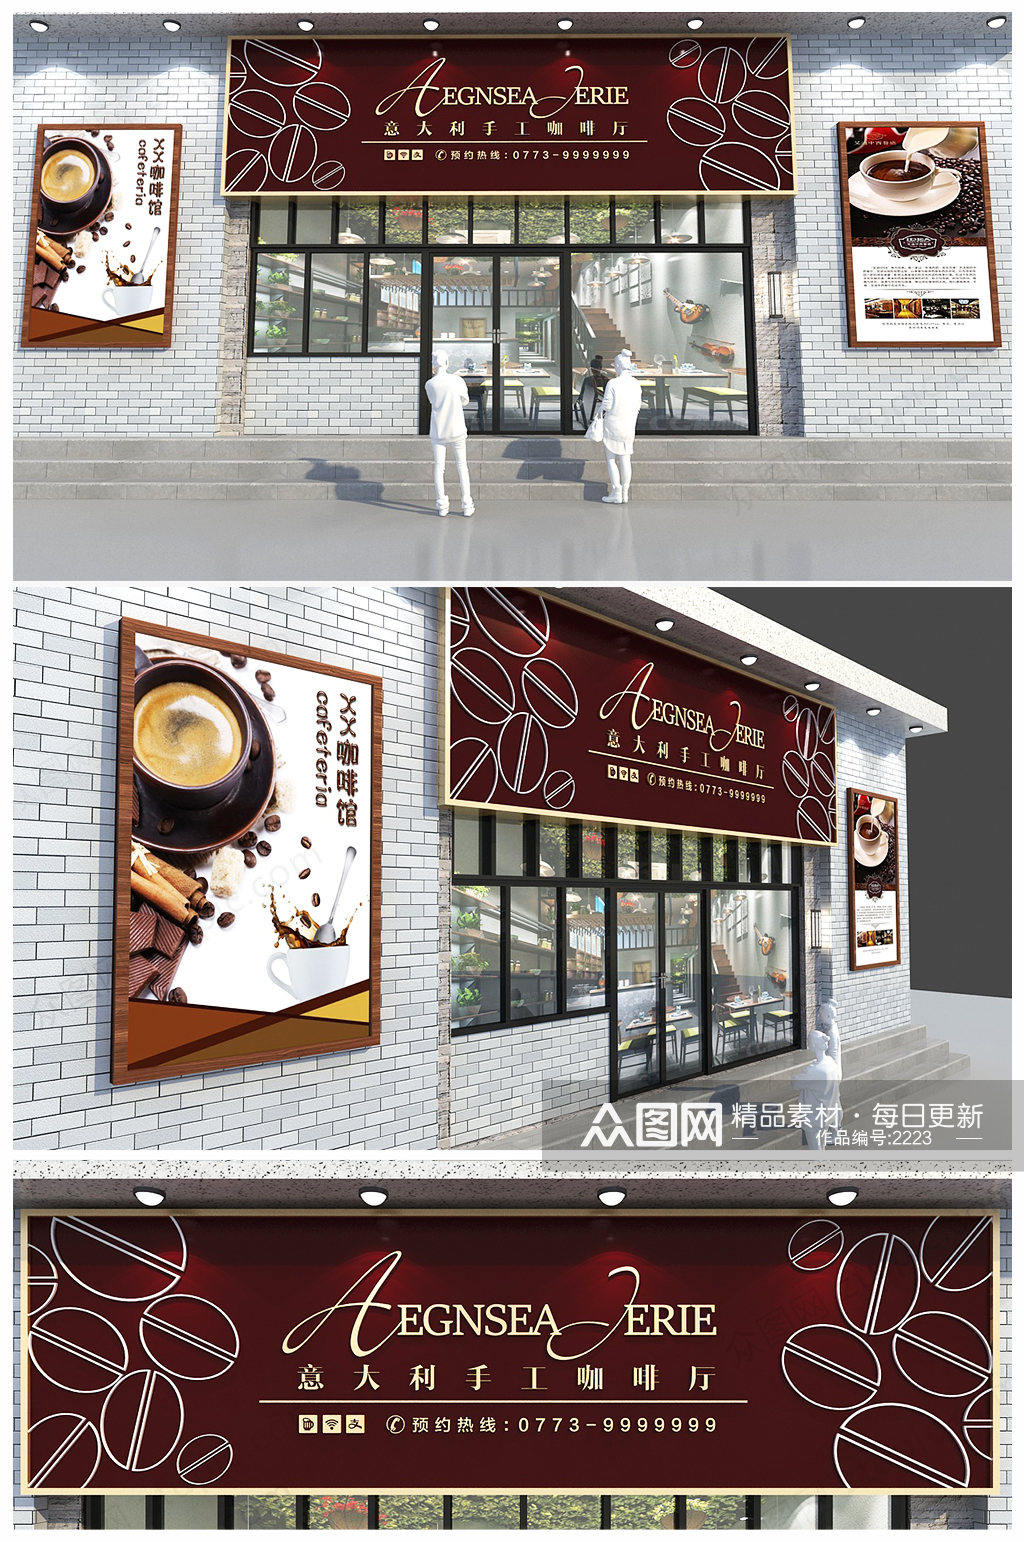 时尚咖啡饮品 咖啡店门头 牌设计 招牌素材